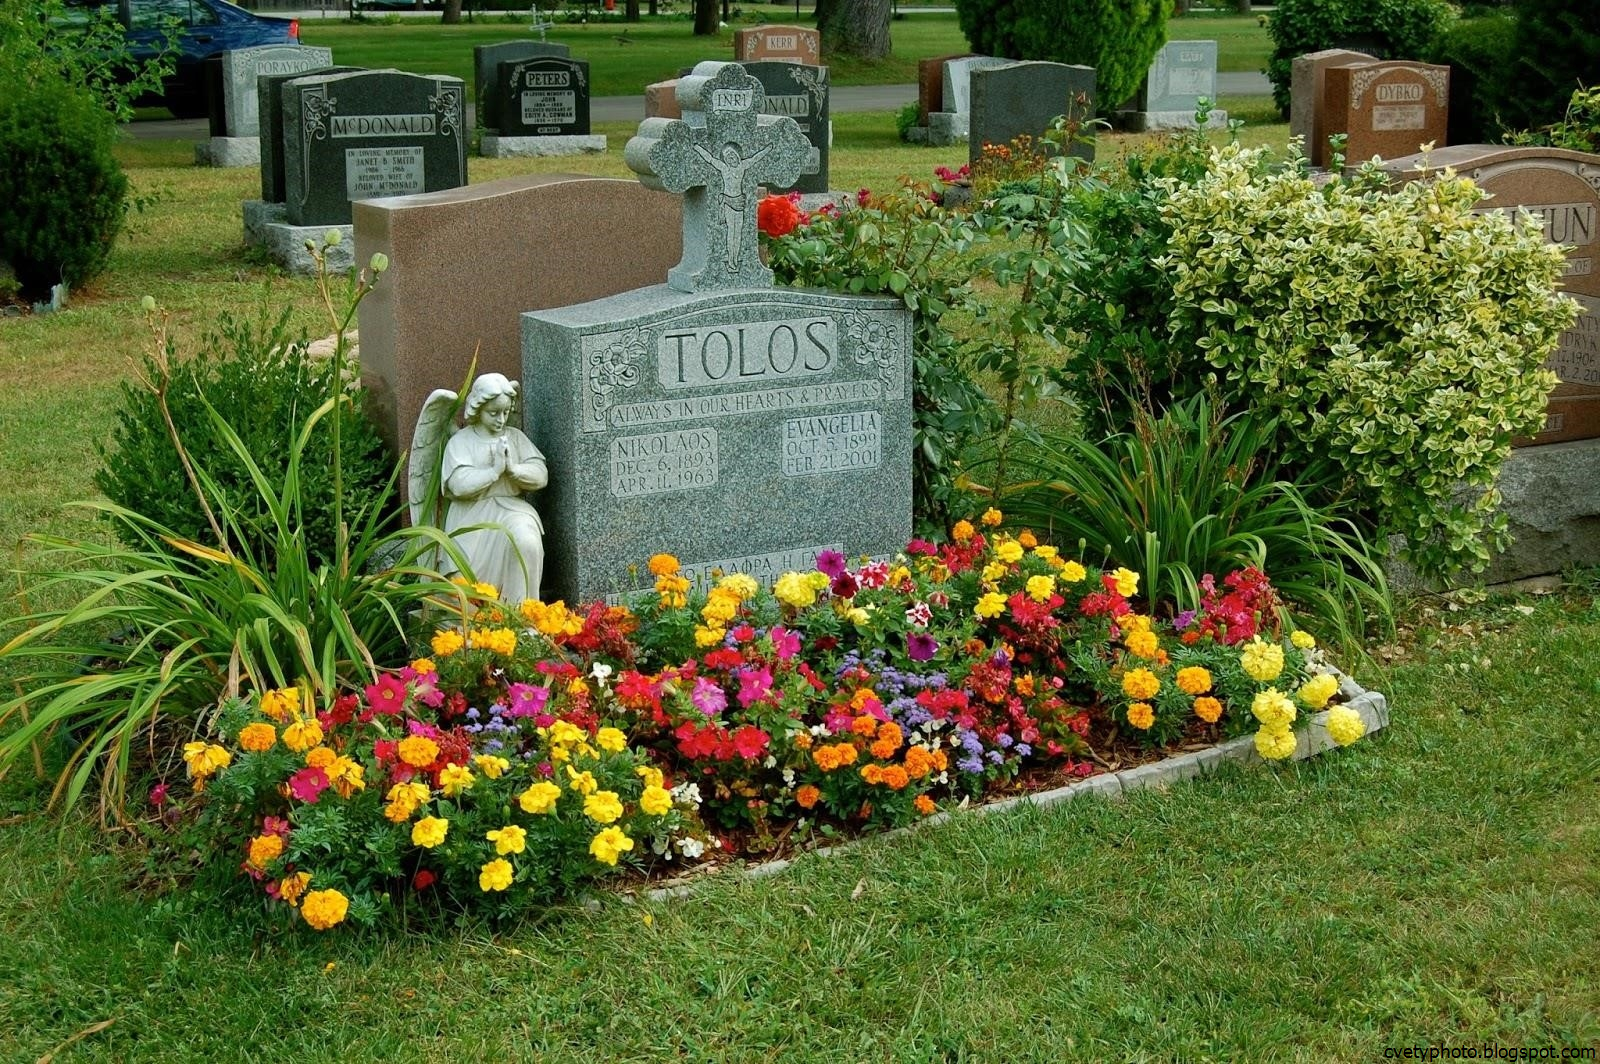 Названия многолетних цветов на могилы. Украшение могилы цветами. Украшение могил многолетними цветами. Могила с цветами. Украсить могилу.